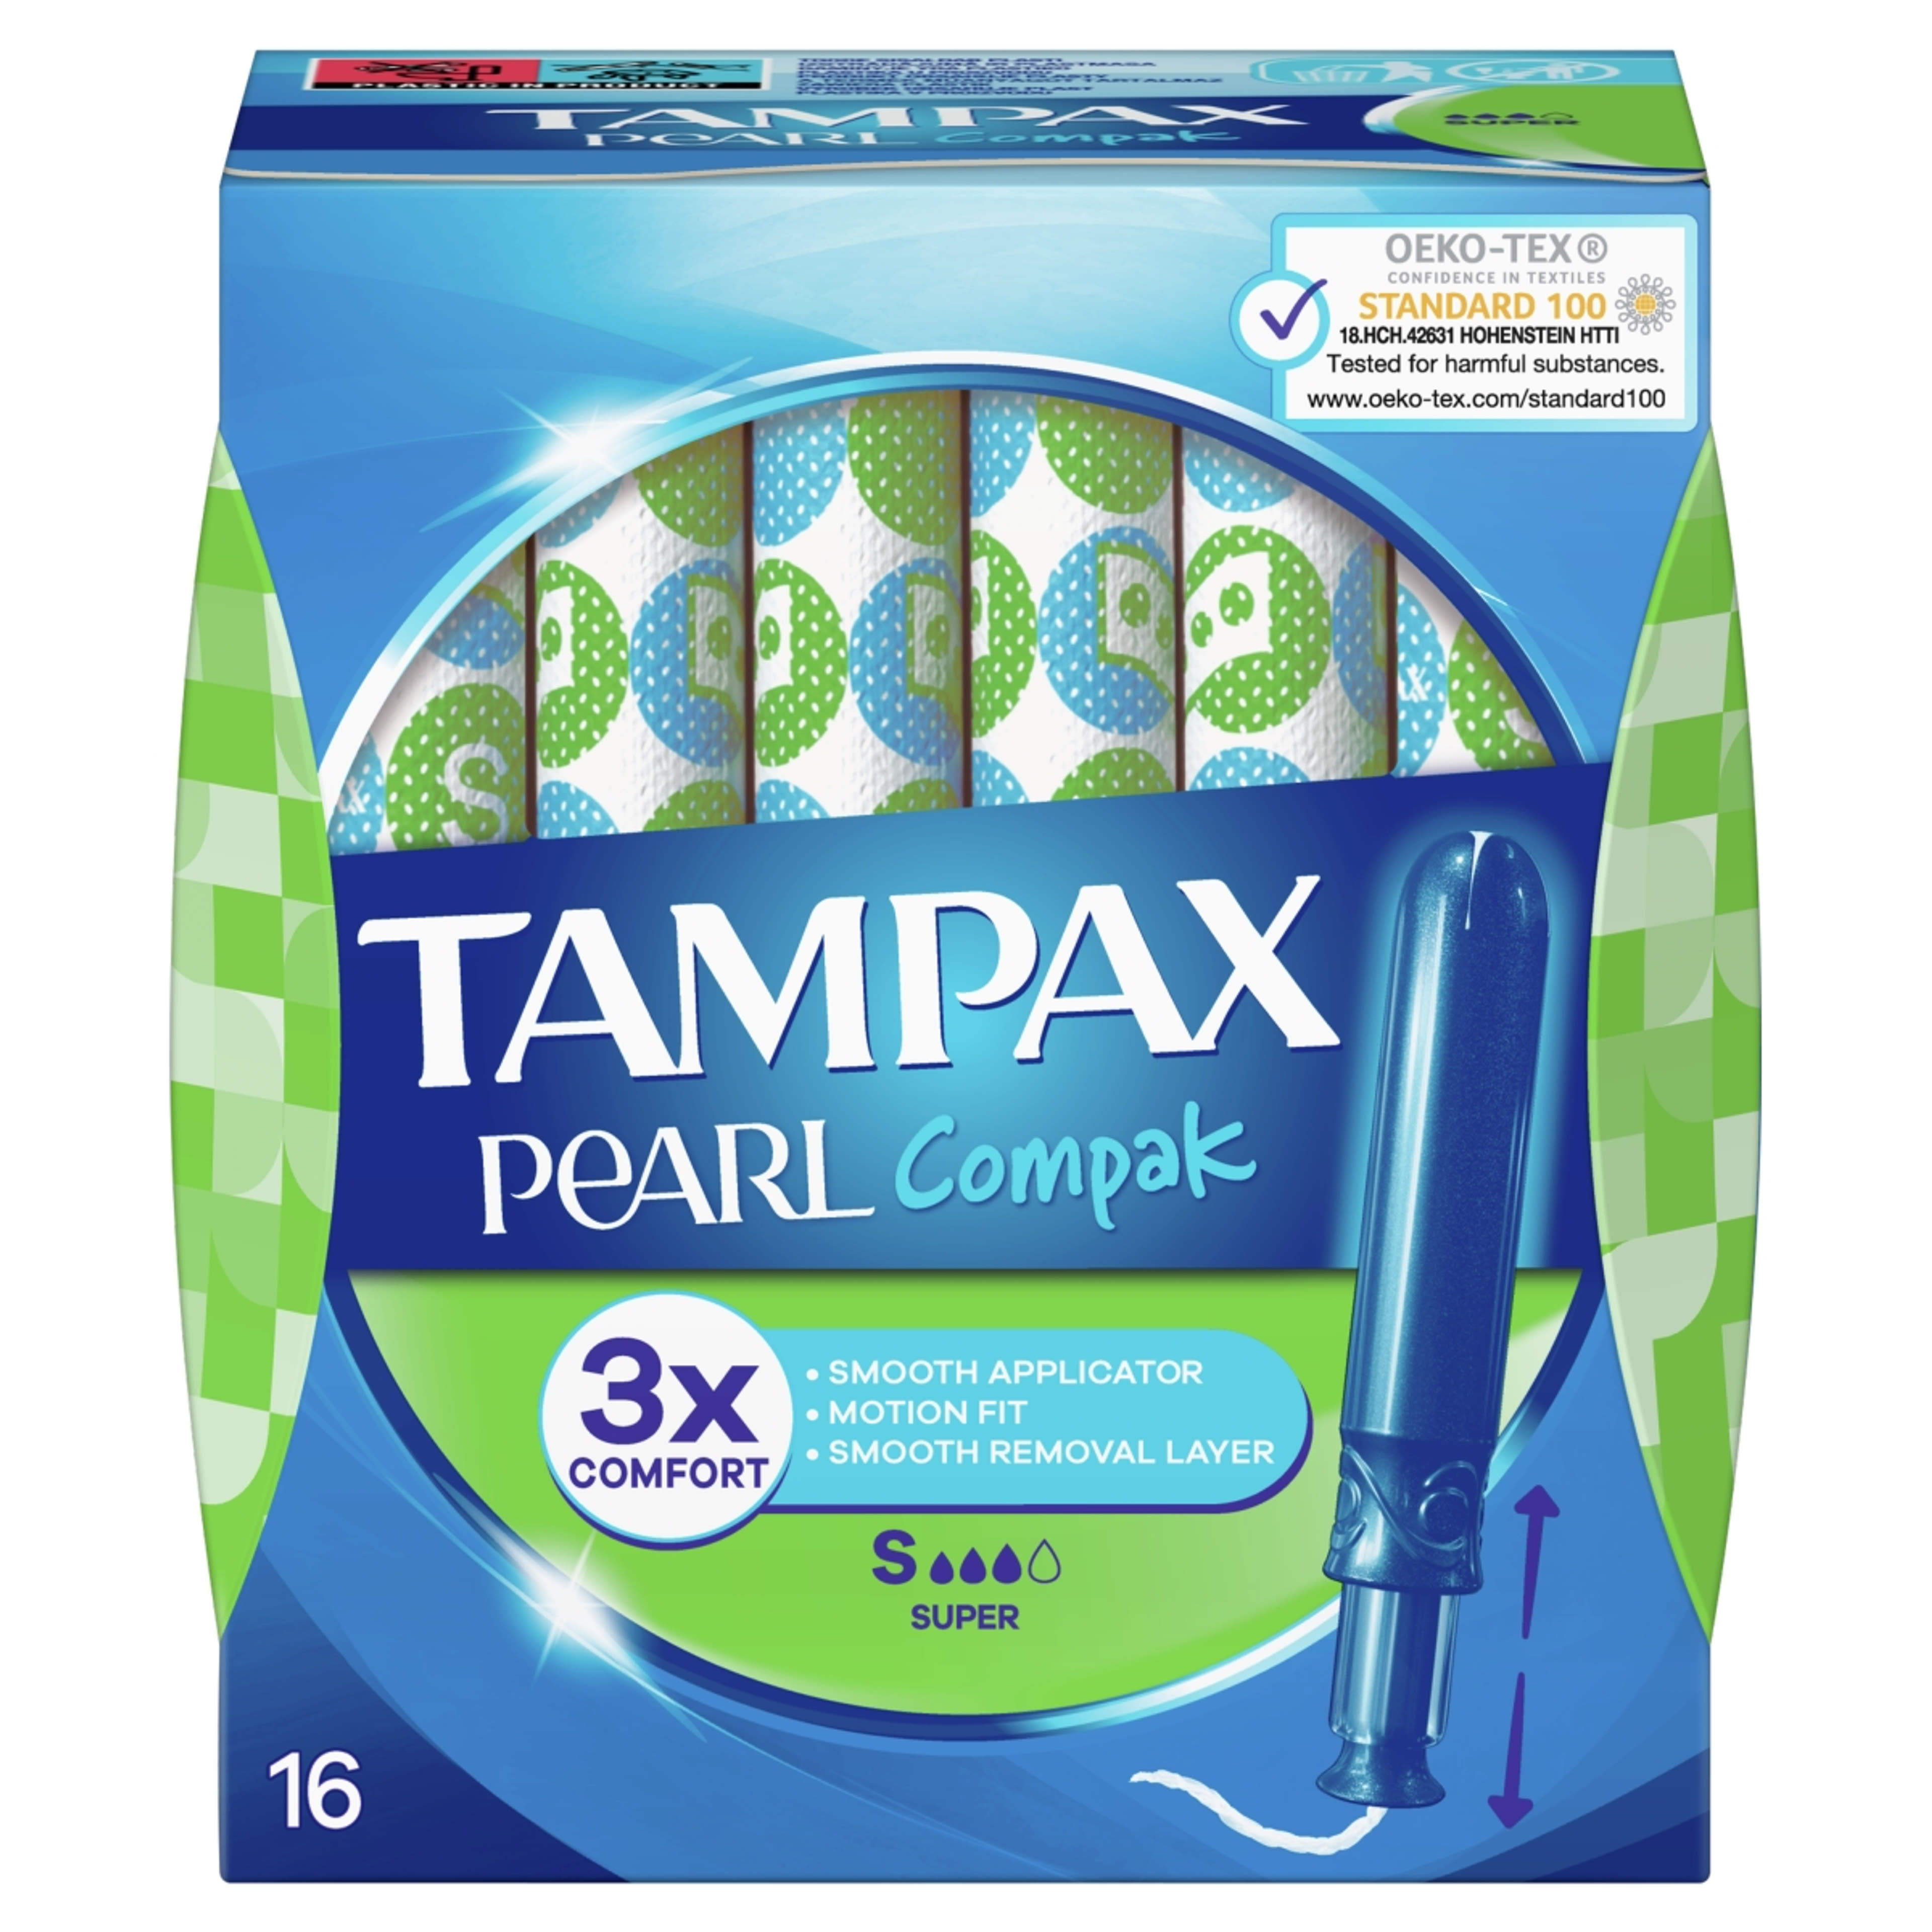 Tampax tampon pearl compak super - 16 db